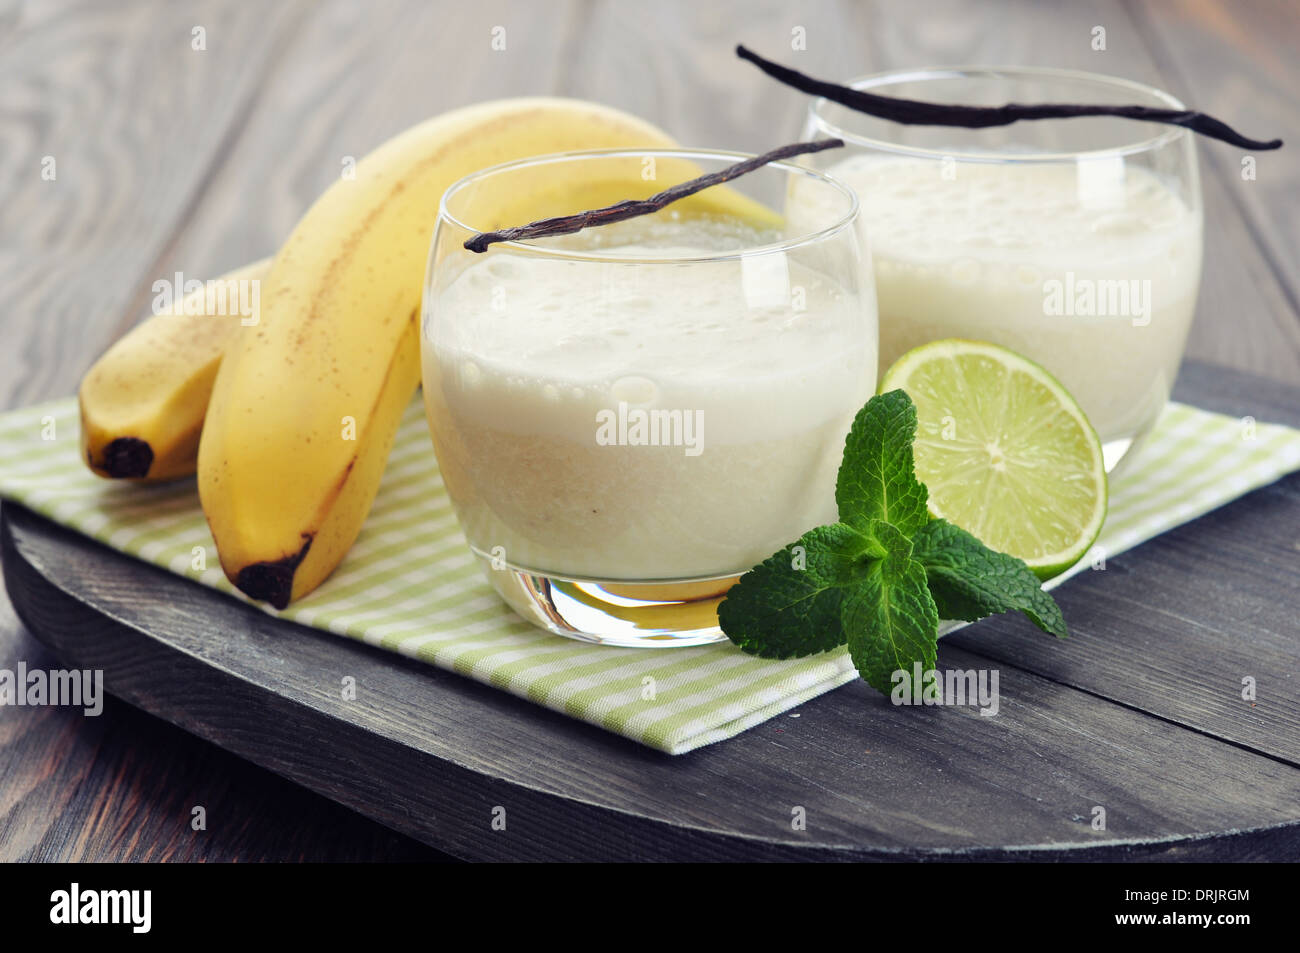 Lait frappé aux bananes dans du verre avec la vanille, Menthe et citron vert Banque D'Images